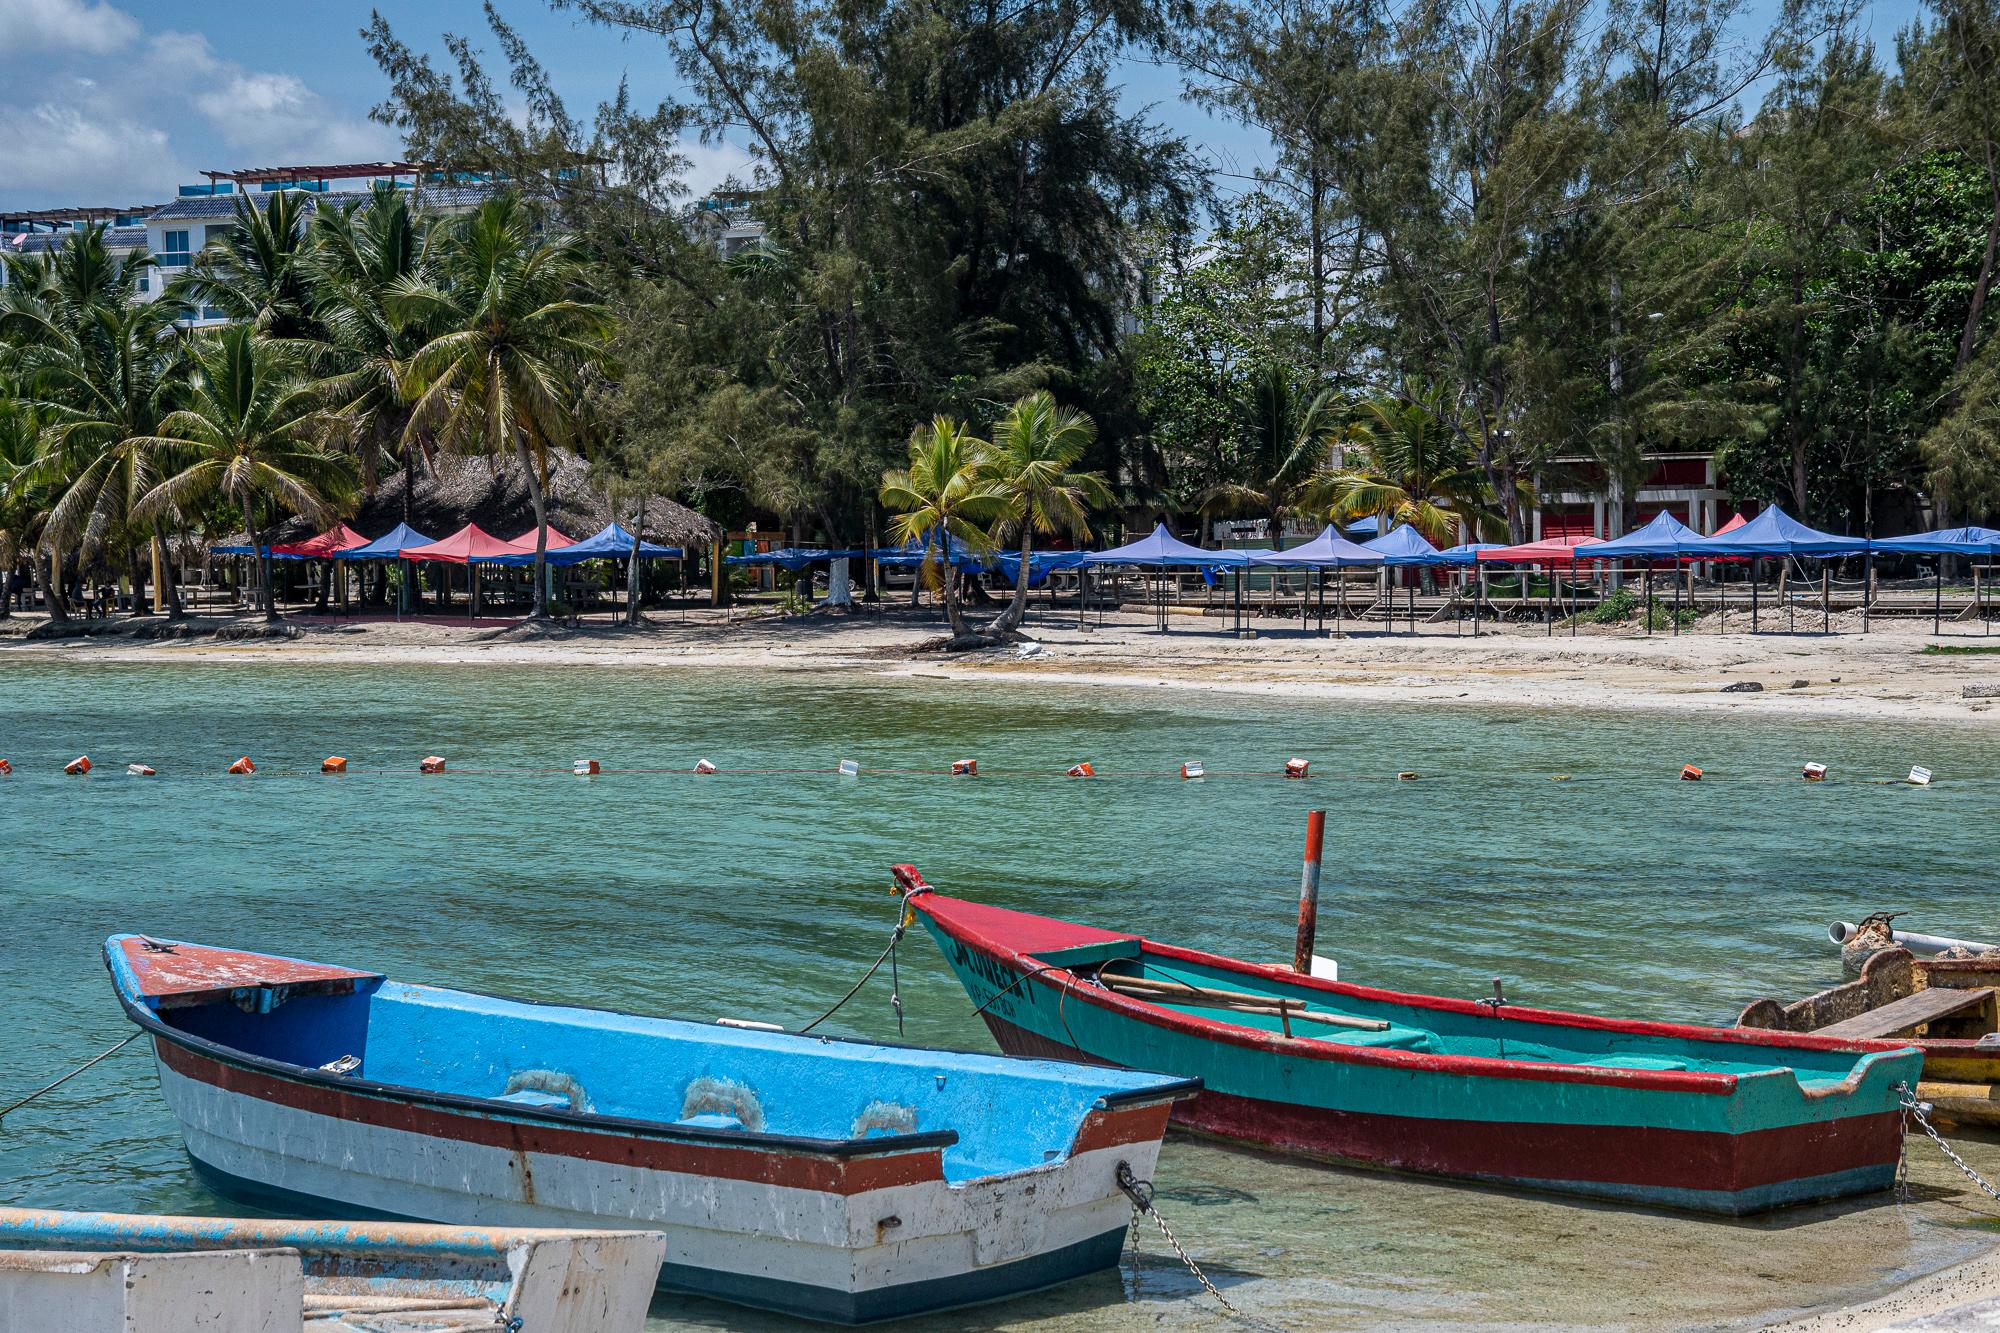 La popular playa de Boca Chica luce desierta en este Viernes Santo, cuando todos los negocios permanecen cerrados, acatando las medidas de cuarentena y aislamiento social impuestas para reducir los contagios por coronavirus en el país.